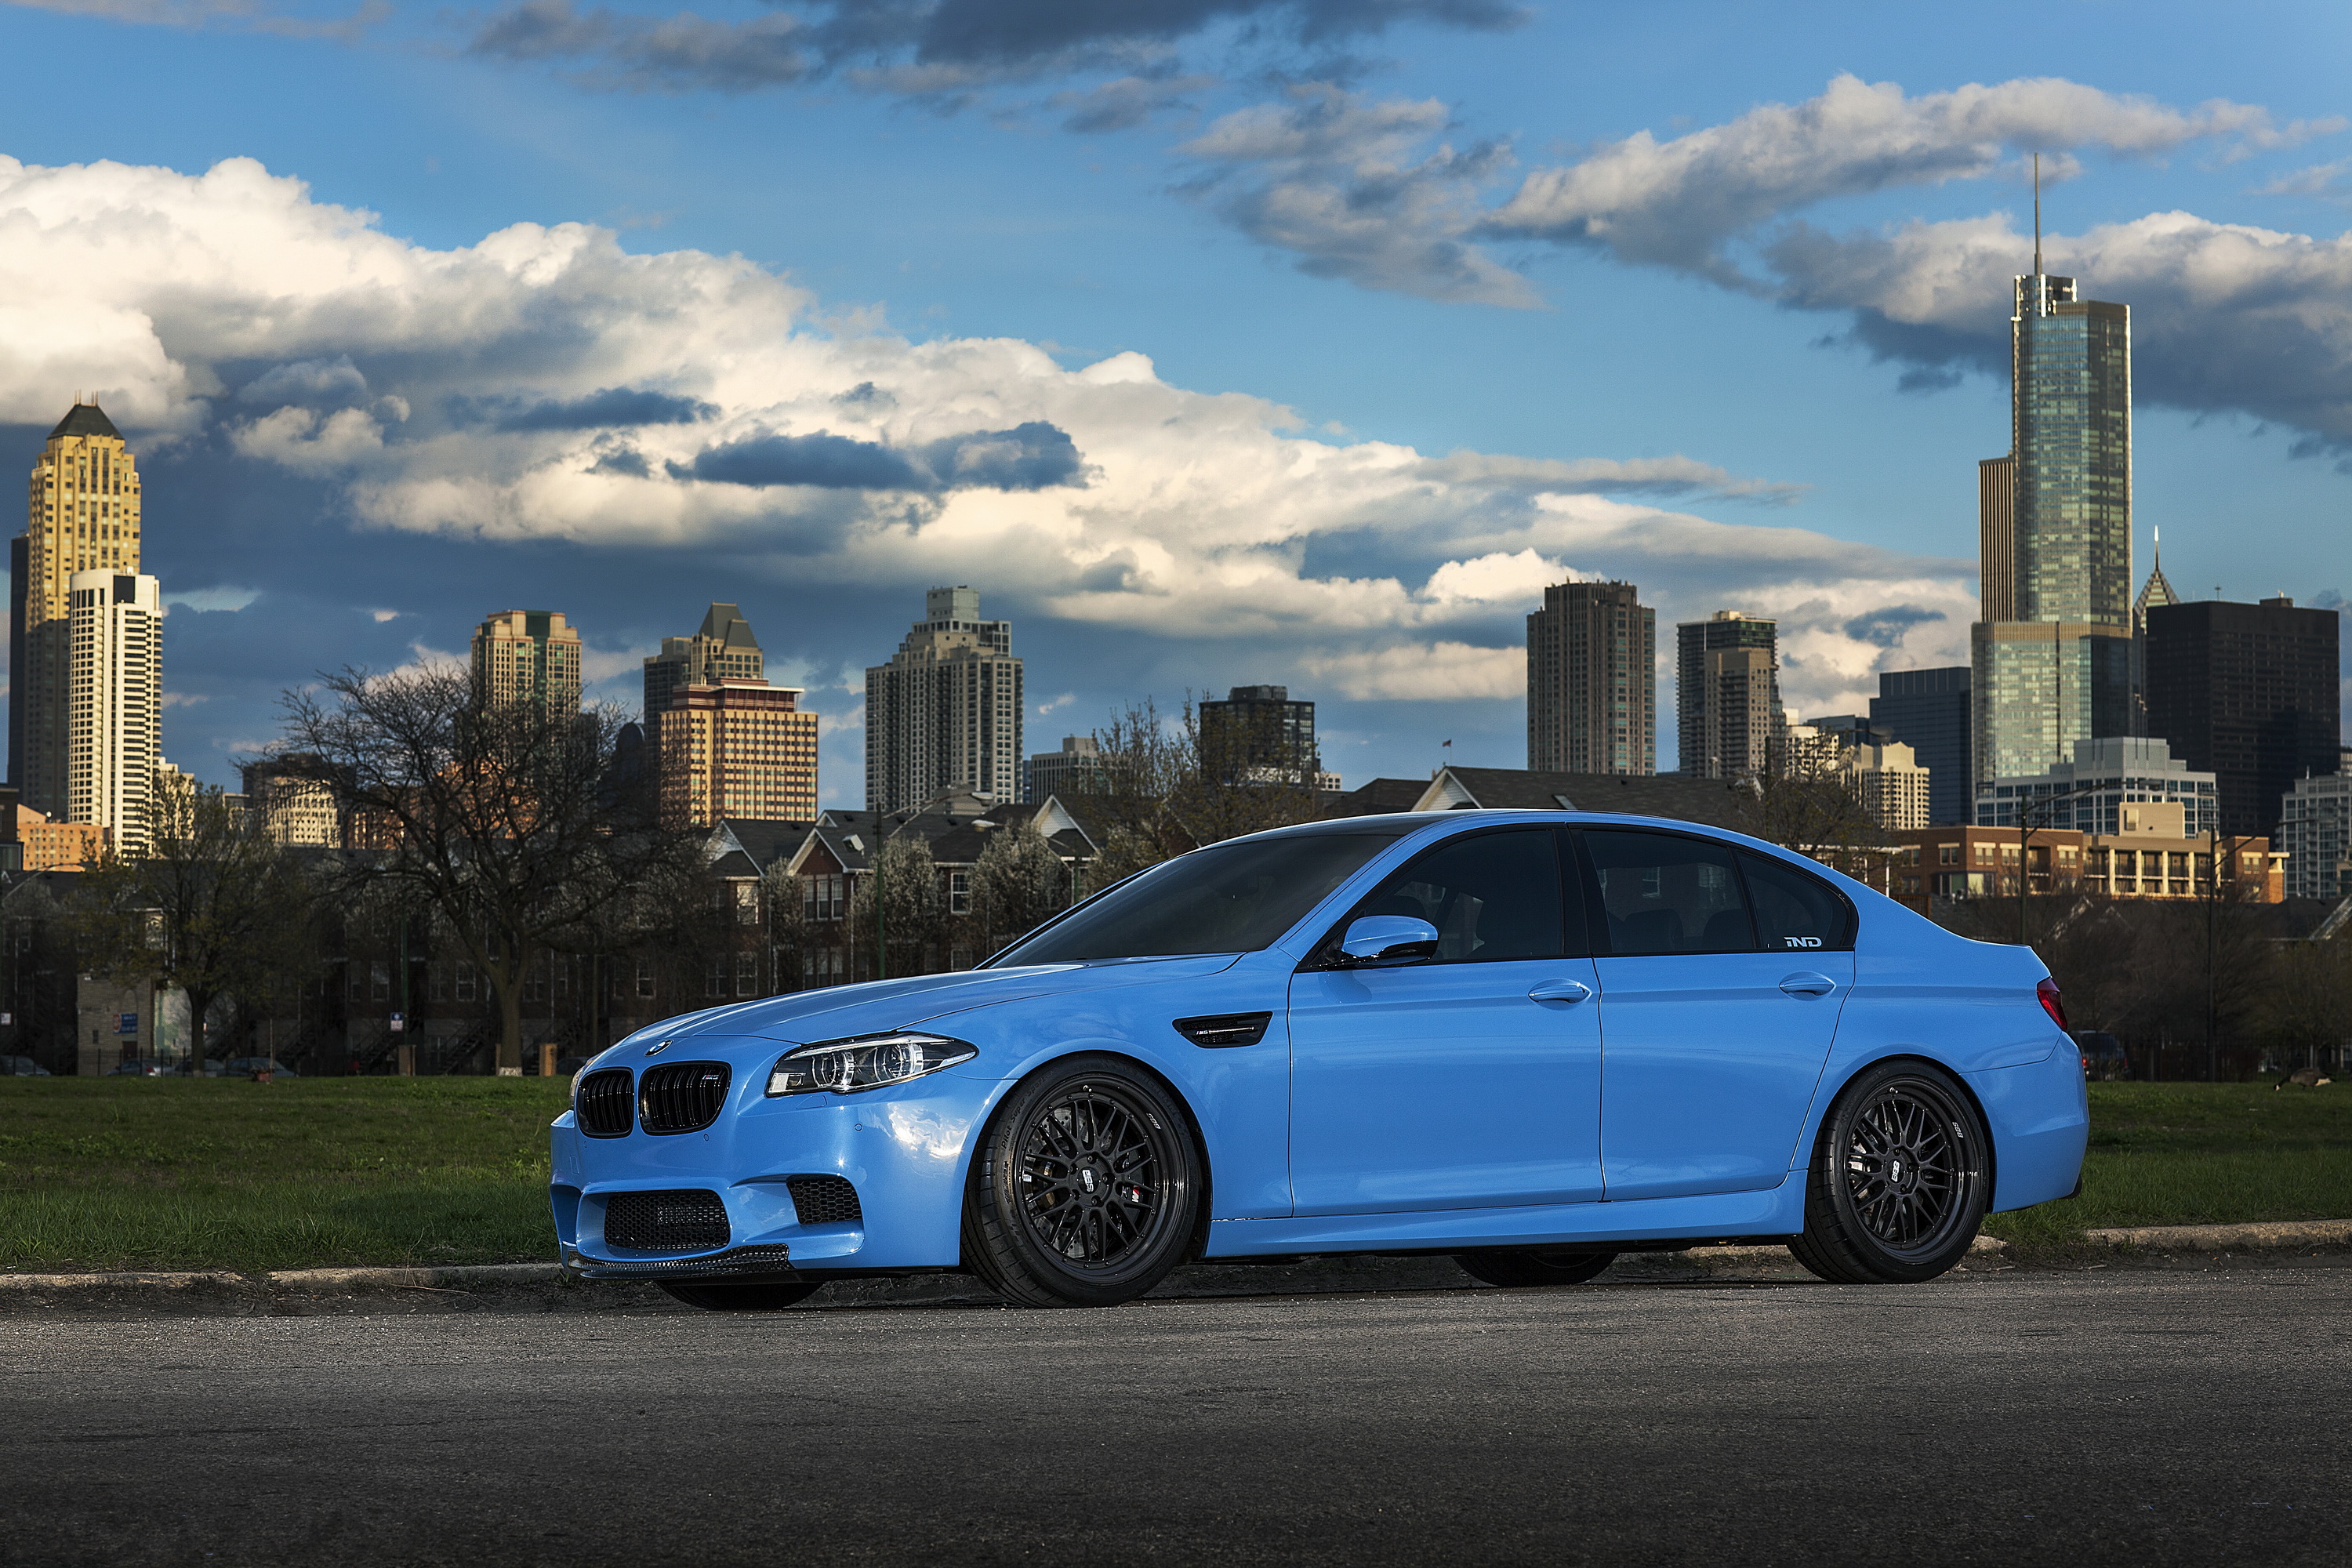 Bmw m 10. BMW m5 f10. BMW m5 f10 синяя. BMW m5 f10 m5. БМВ м5 синяя.